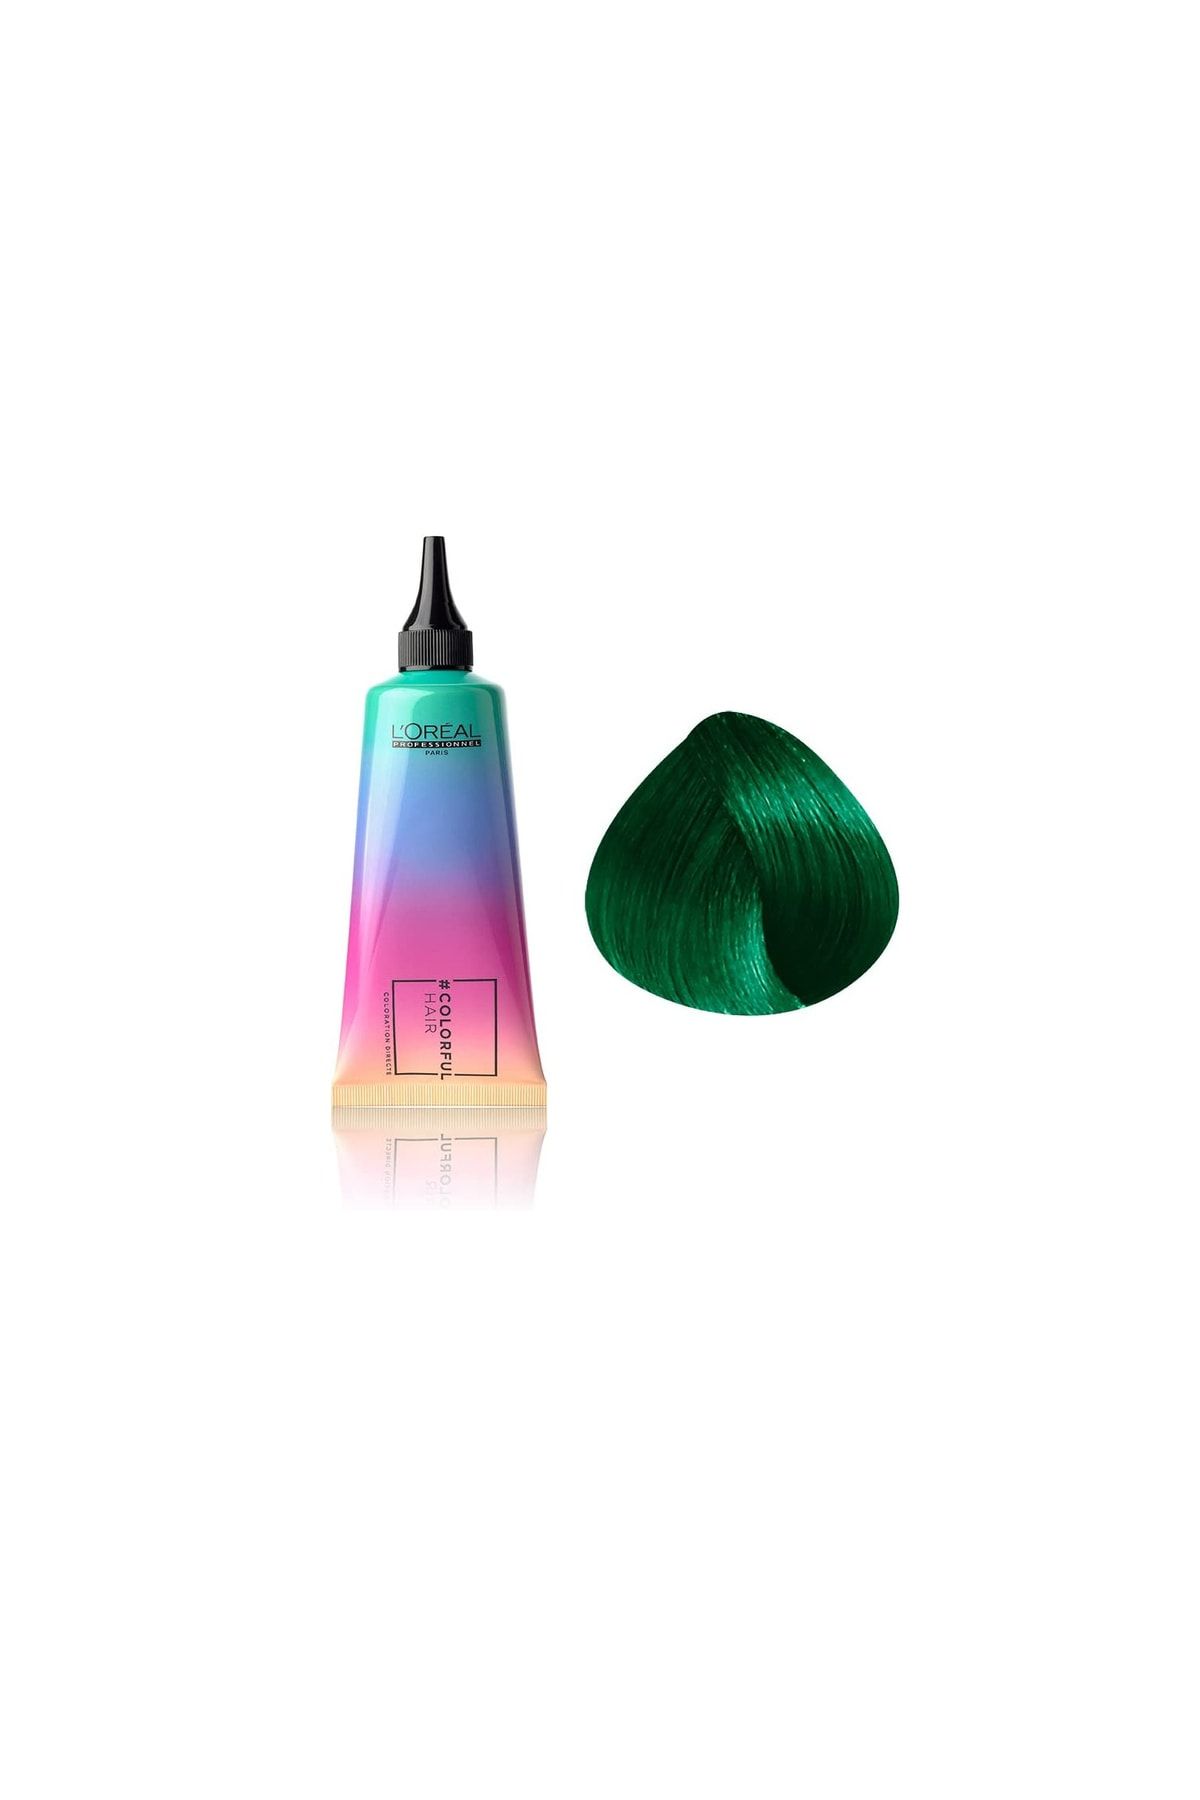 L'oreal Professionnel Colorful Hair Iced Mint Doğal Yeşil Saç Boyası 90ml